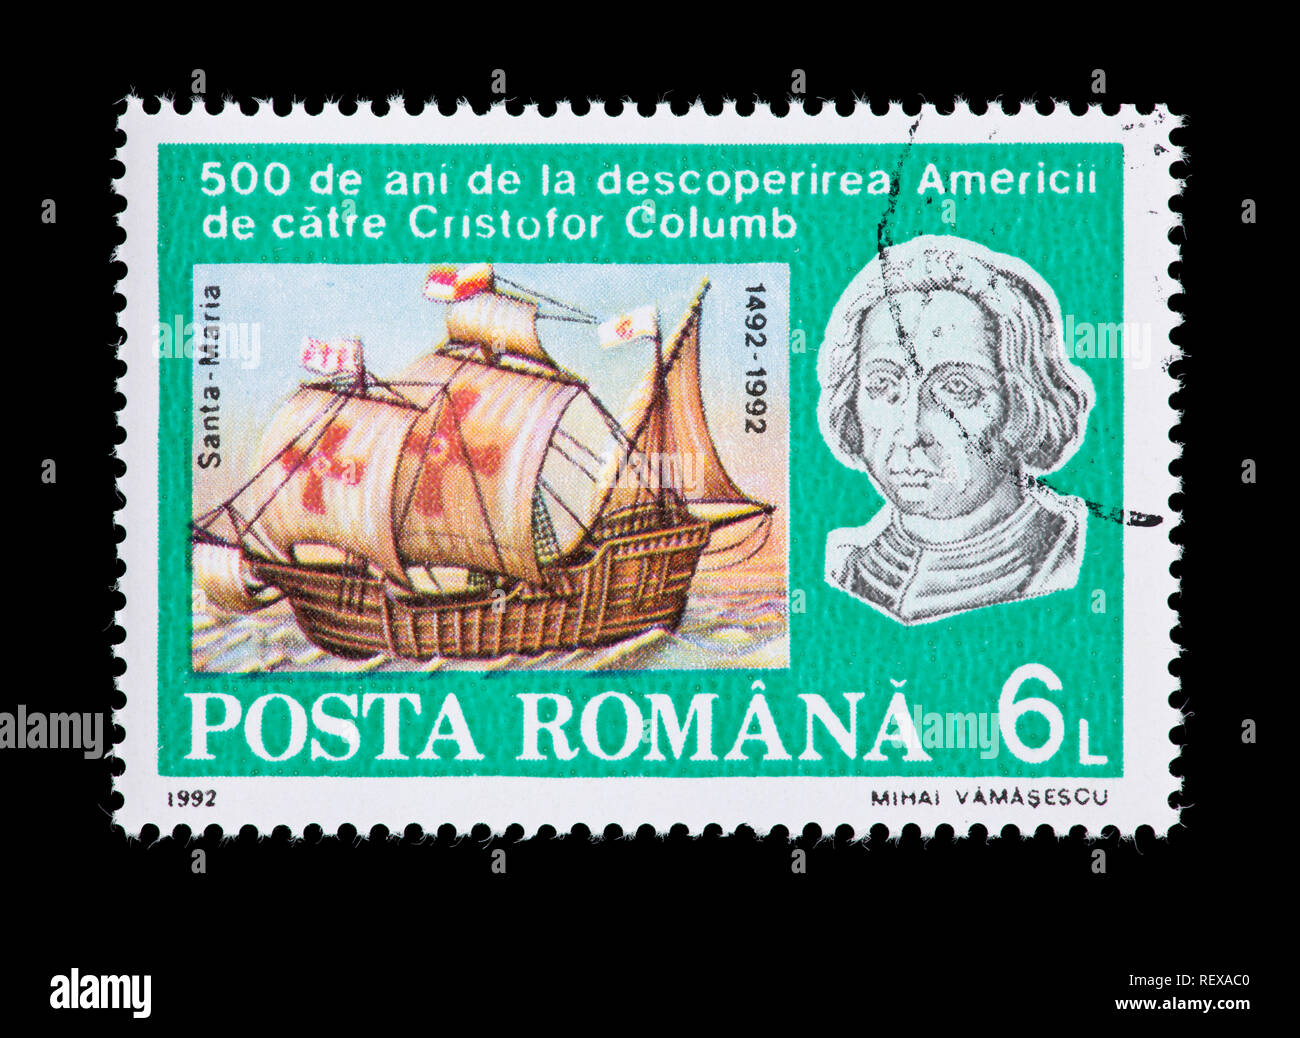 Francobollo dalla Romania raffiguranti Cristoforo Colombo e il Santa Maria, il cinquecentesimo anniversario della scoperta del Nuovo Mondo. Foto Stock